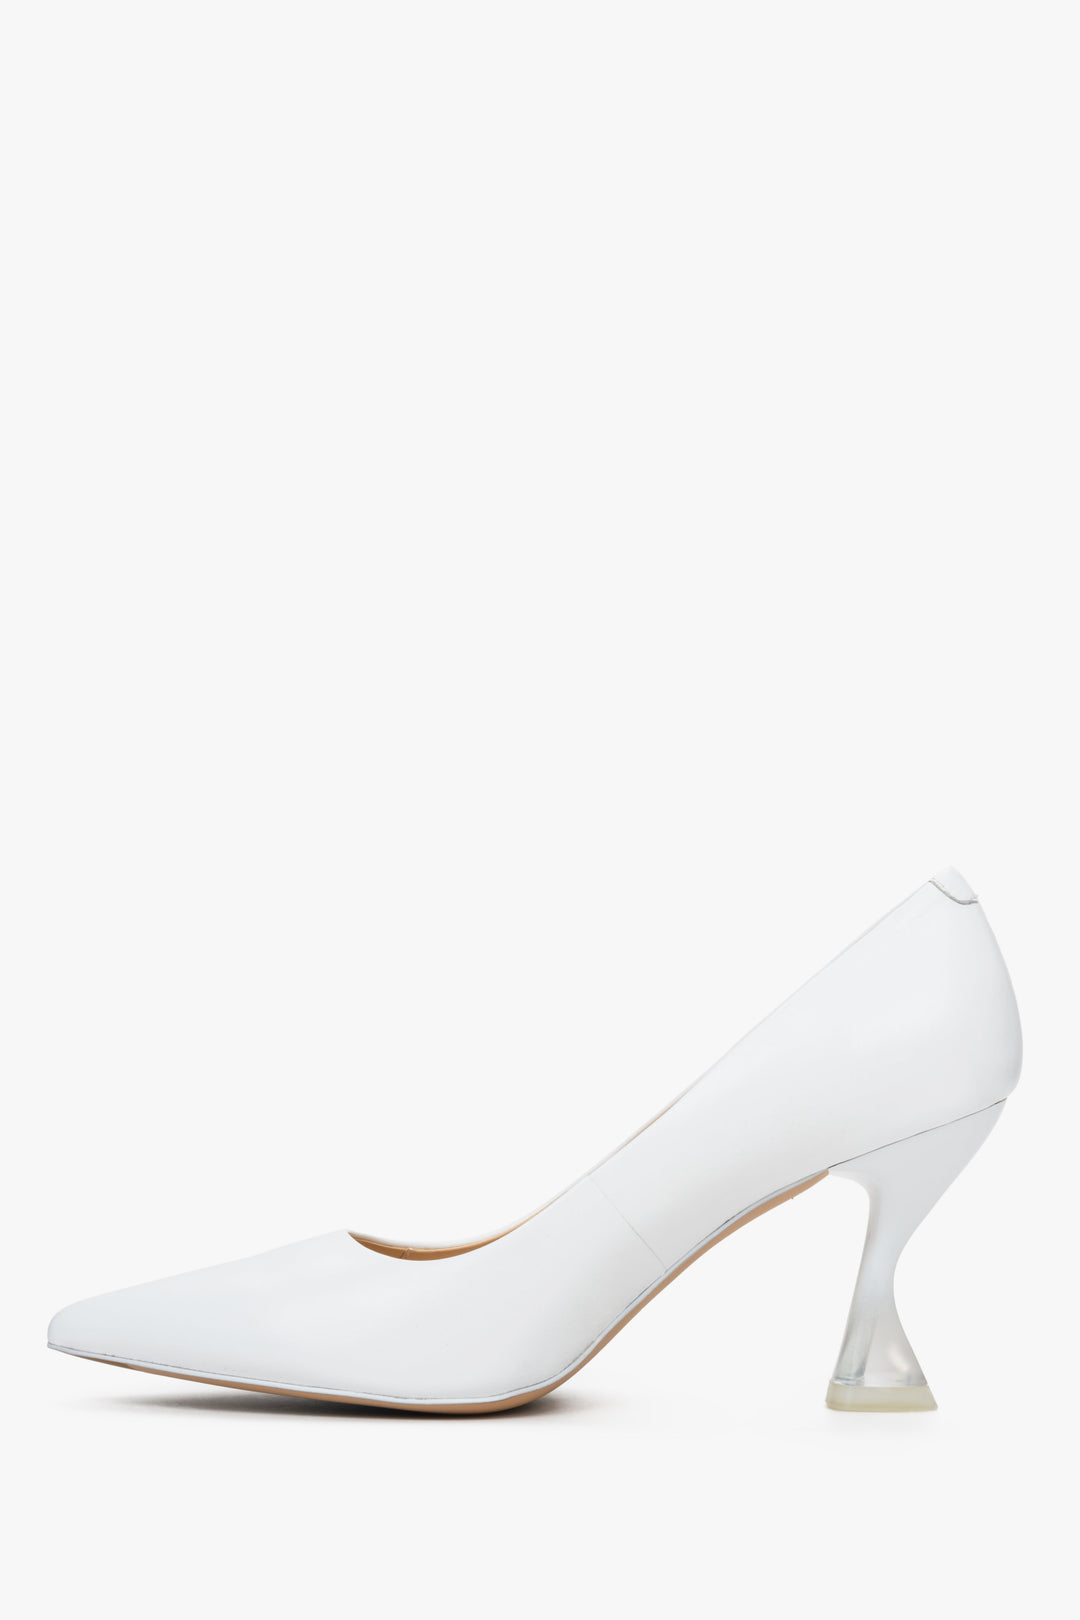 Czółenka damskie białe skórzane Estro na szpilce - profil butów.